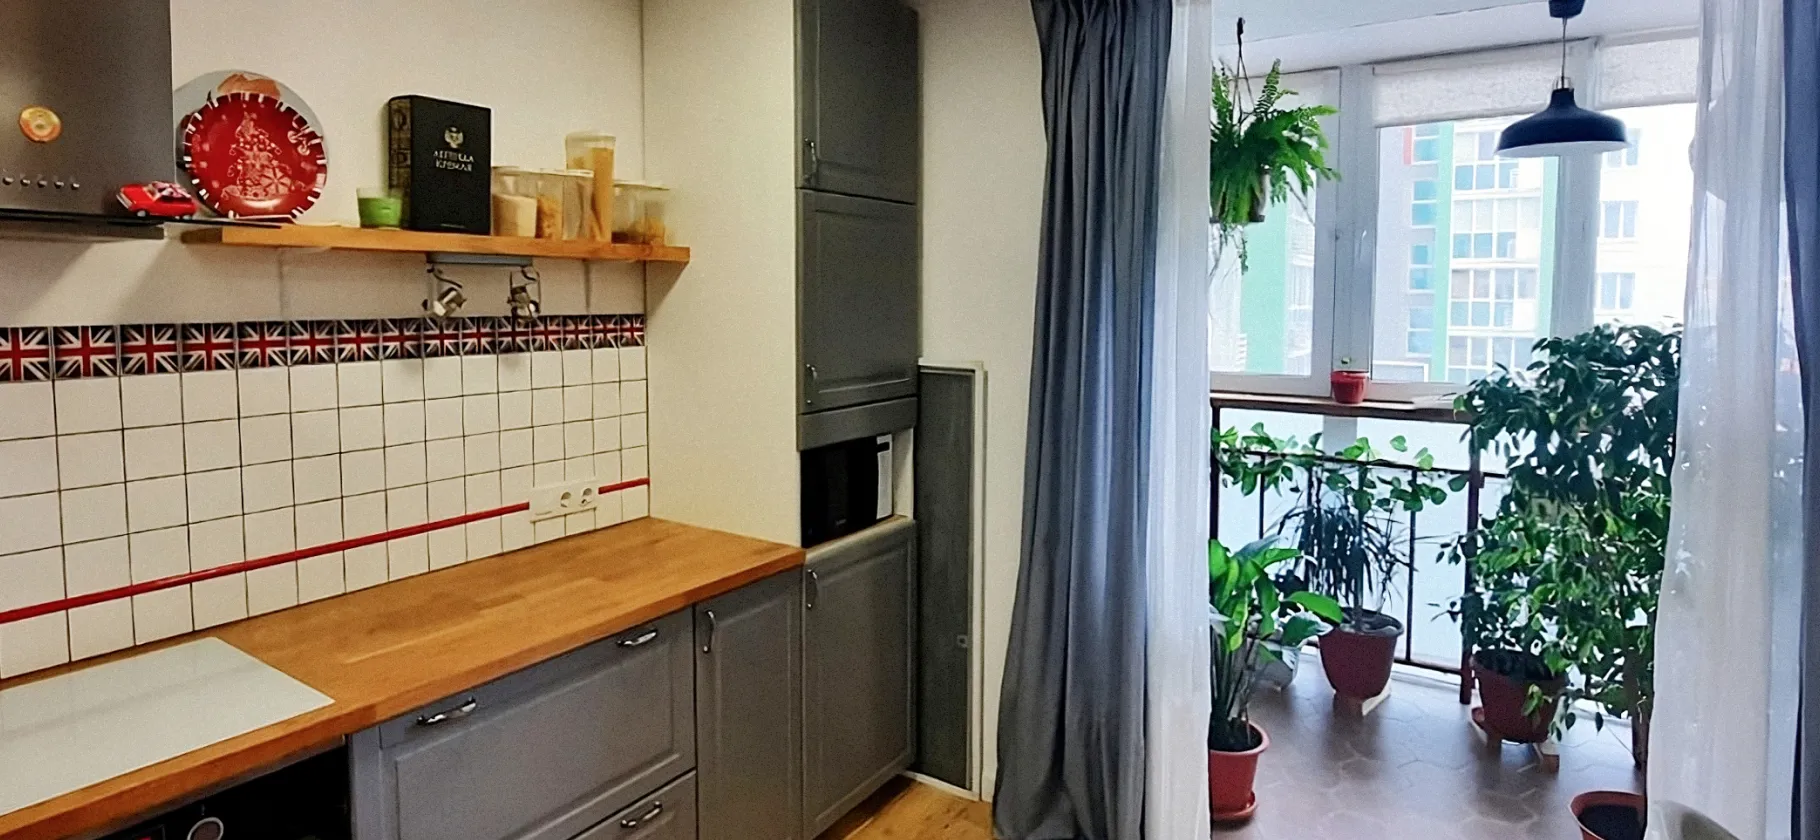 Кухня в квартиру 93 серии в стиле Прованс | VK